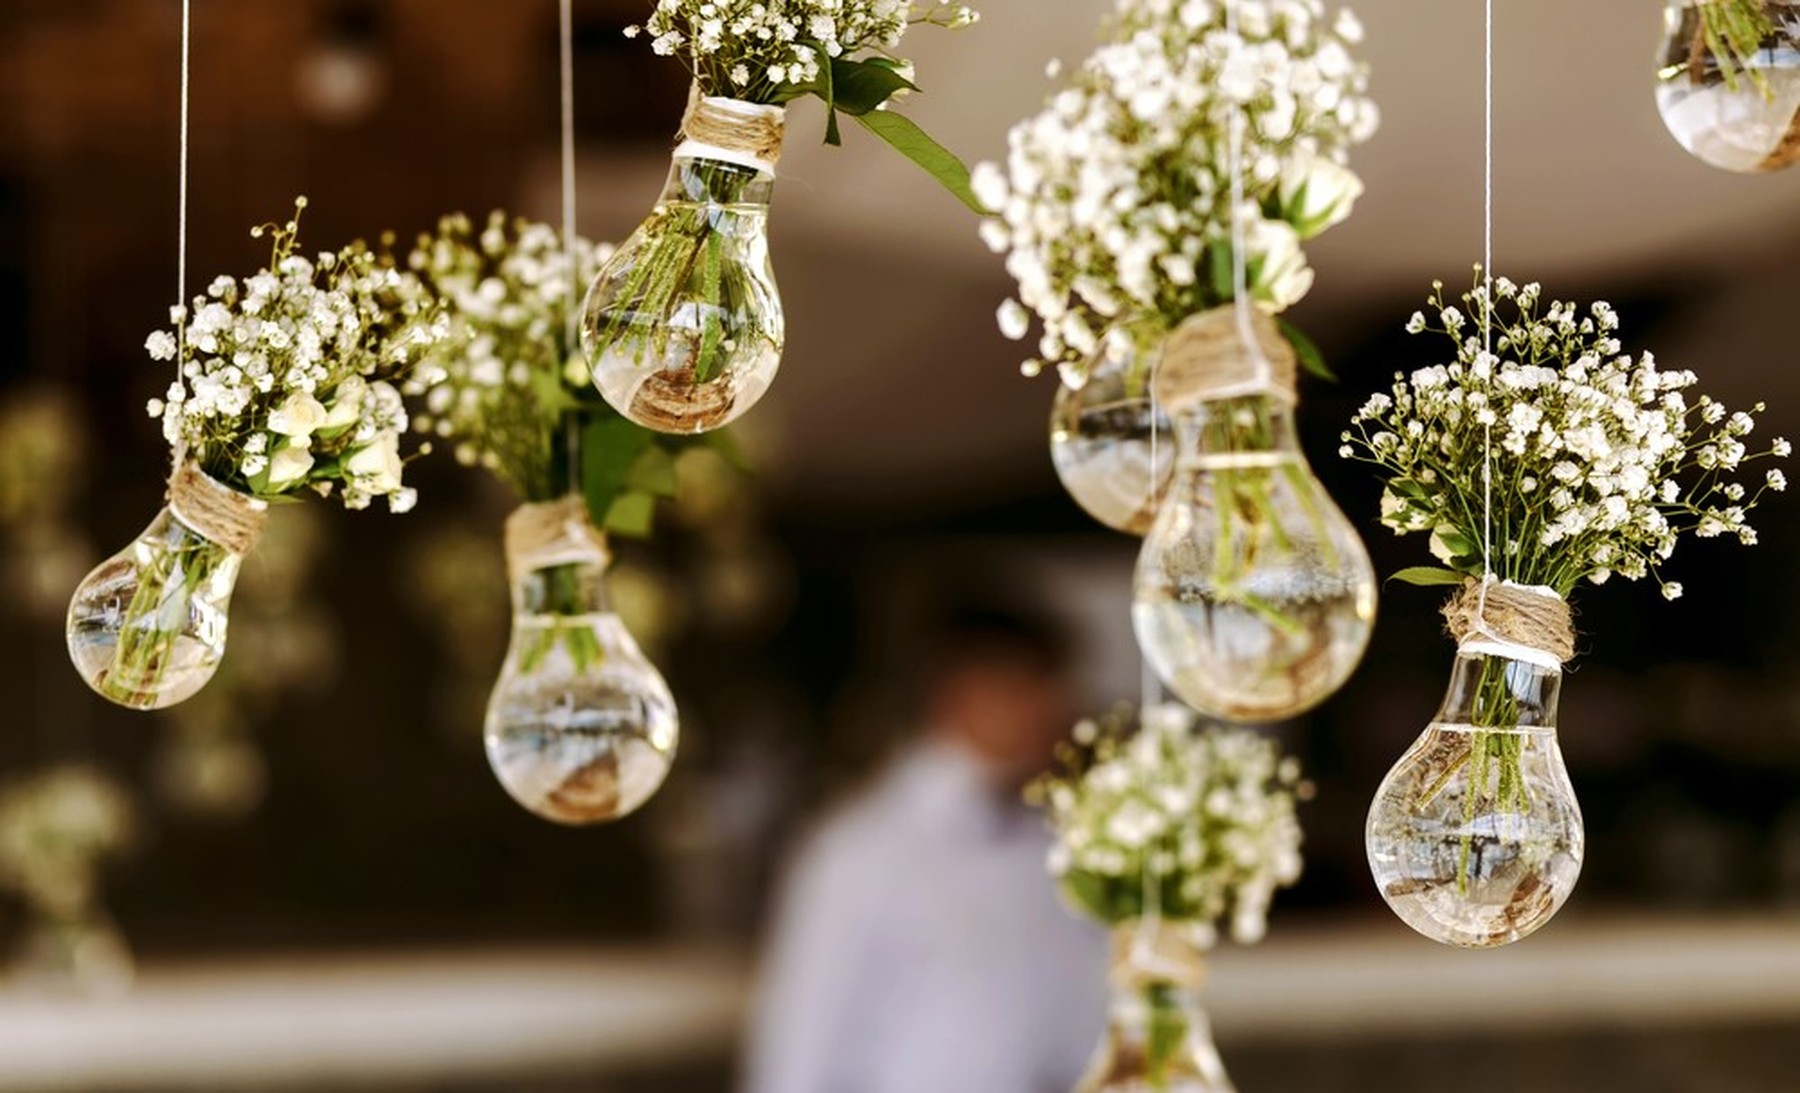 Bombillas con flores blancas secas dentro a modo de jarrón colgando de un techo